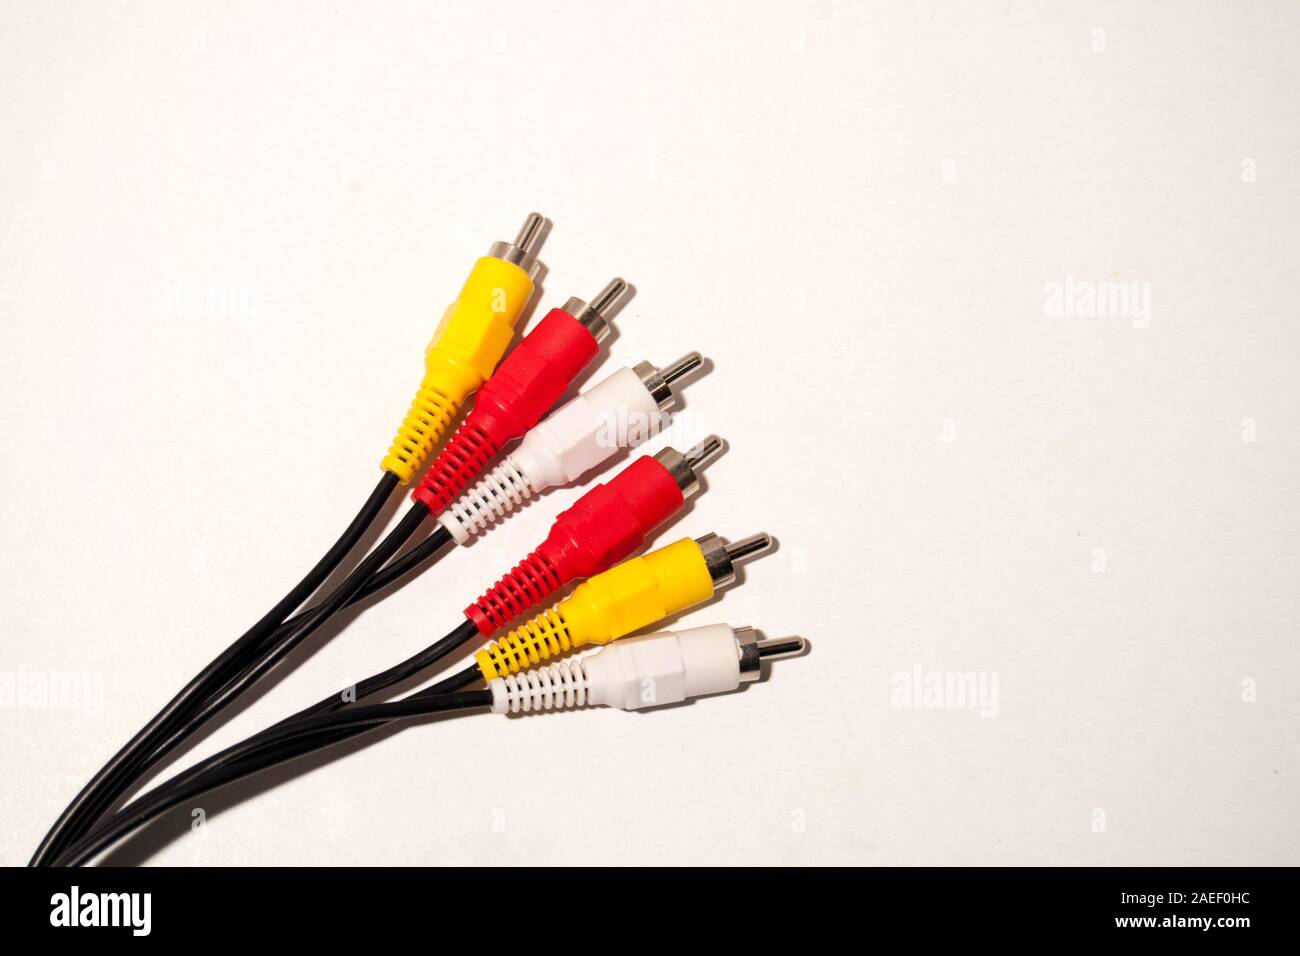 Rot, Gelb und Weiß. Audio Video Kabel RCA-Buchse auf weißem Hintergrund  Stockfotografie - Alamy